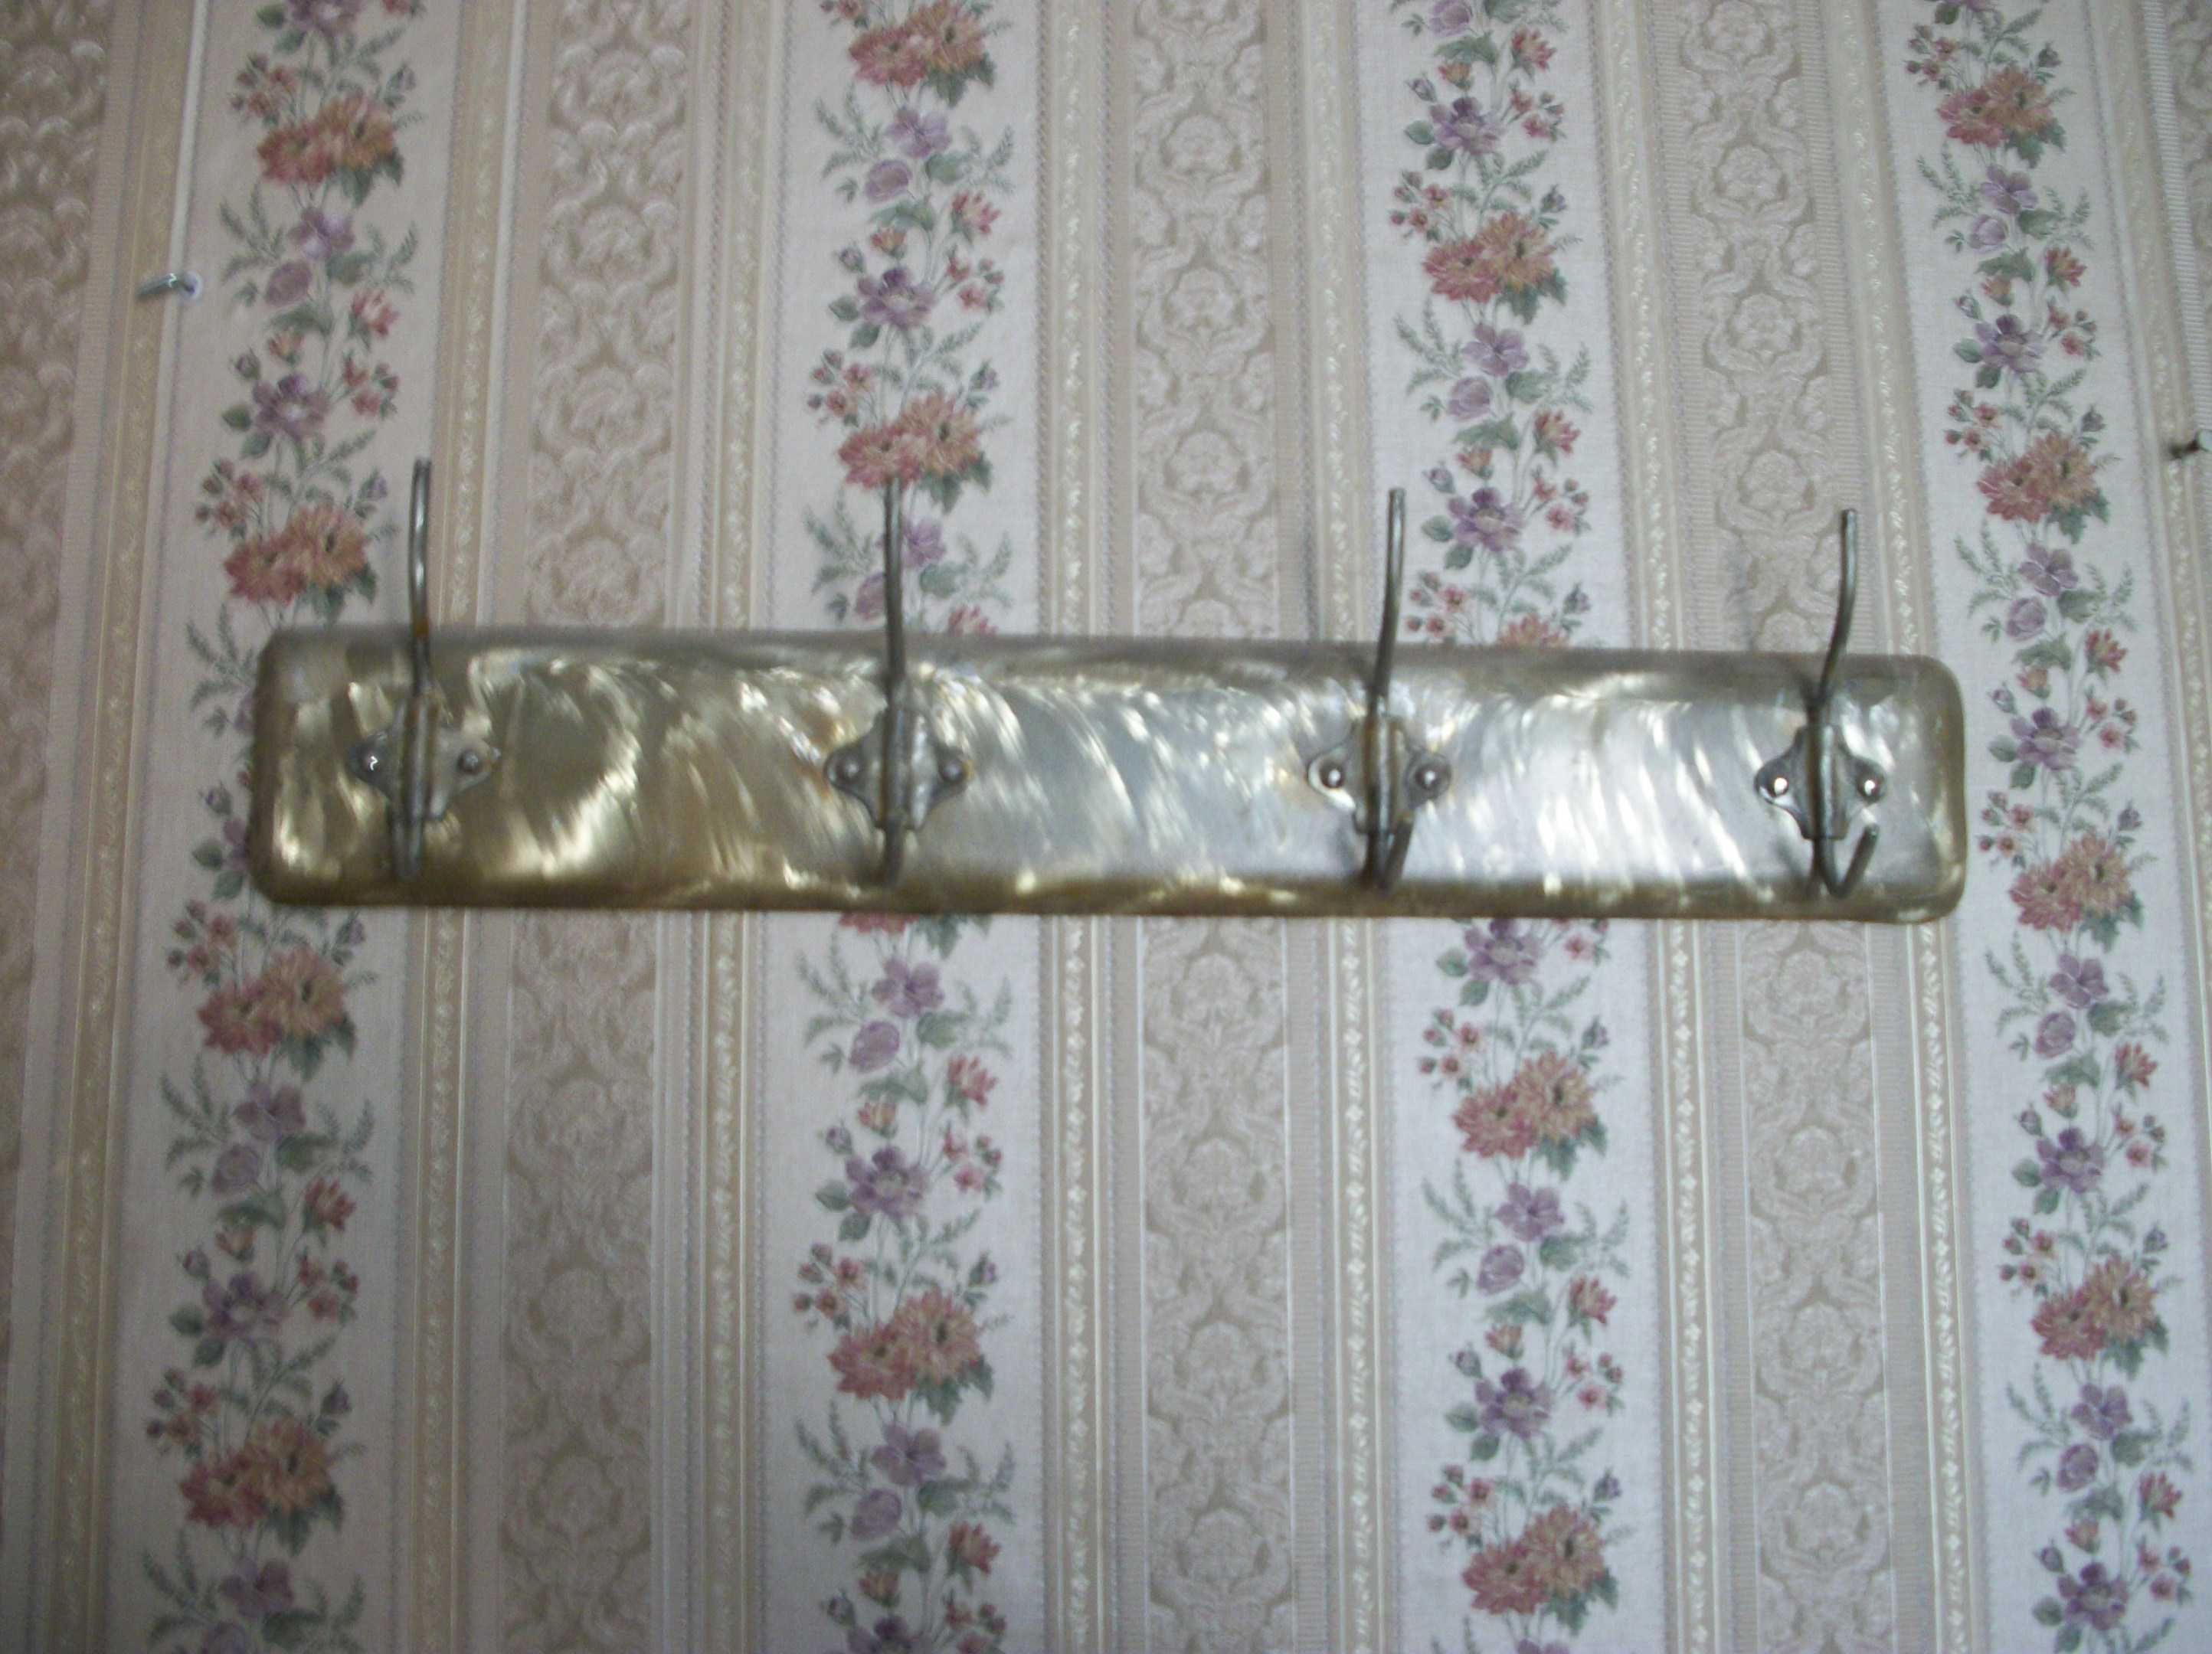 Ковер СССР 1960-x, размер 2,75 х 1,40-см и настенная вешалка, 1950-x.